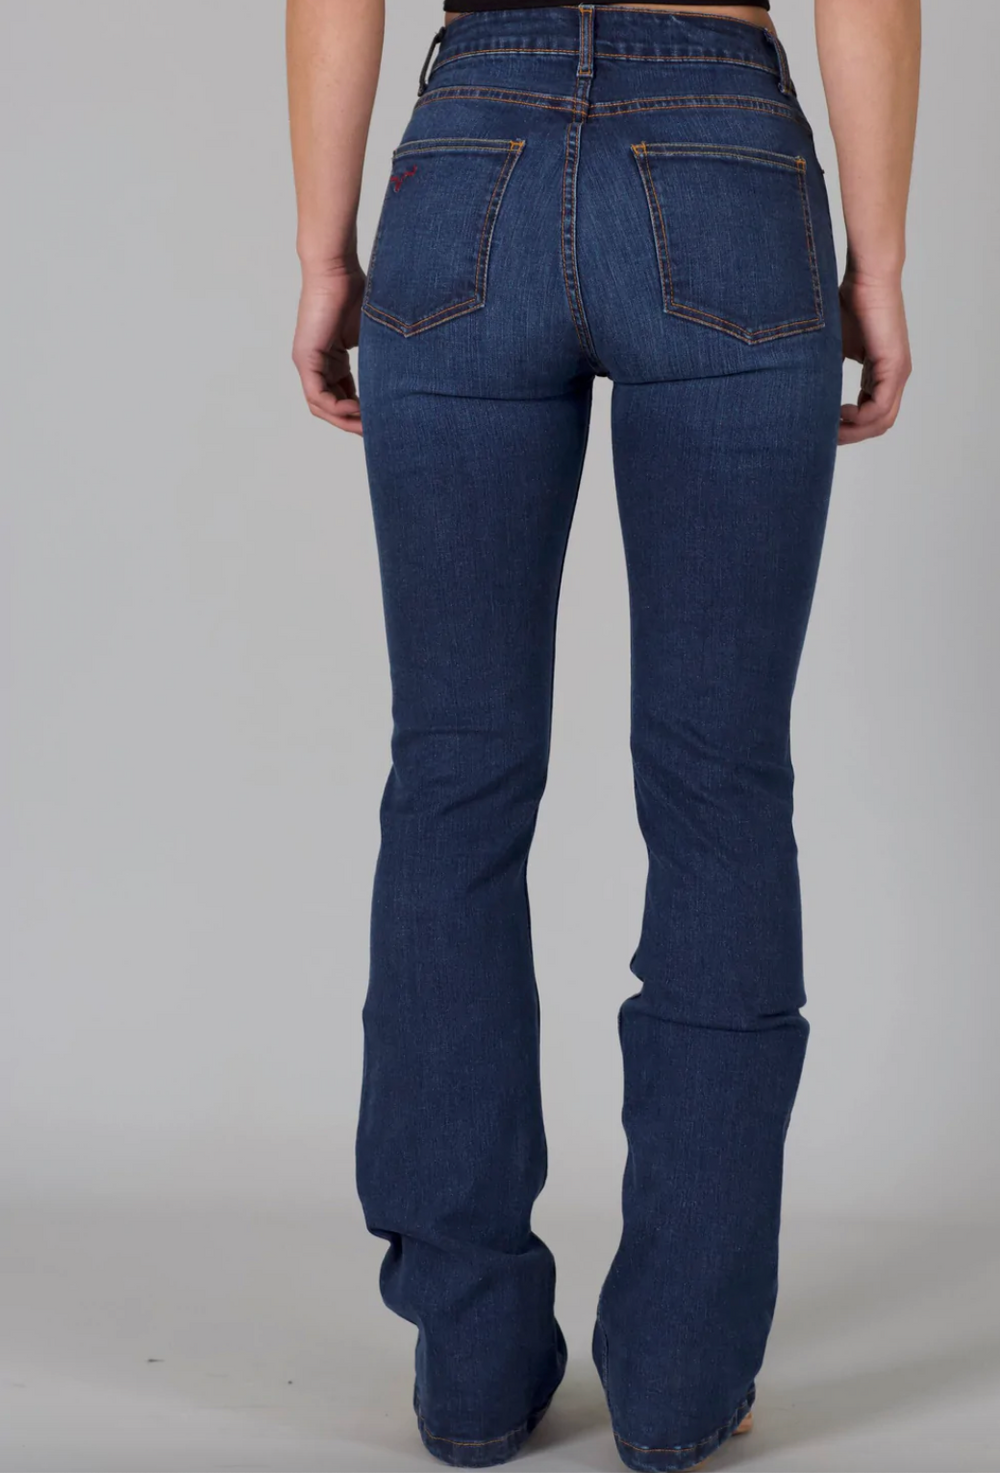 Chloe- Kimes Ranch Women's Jeans